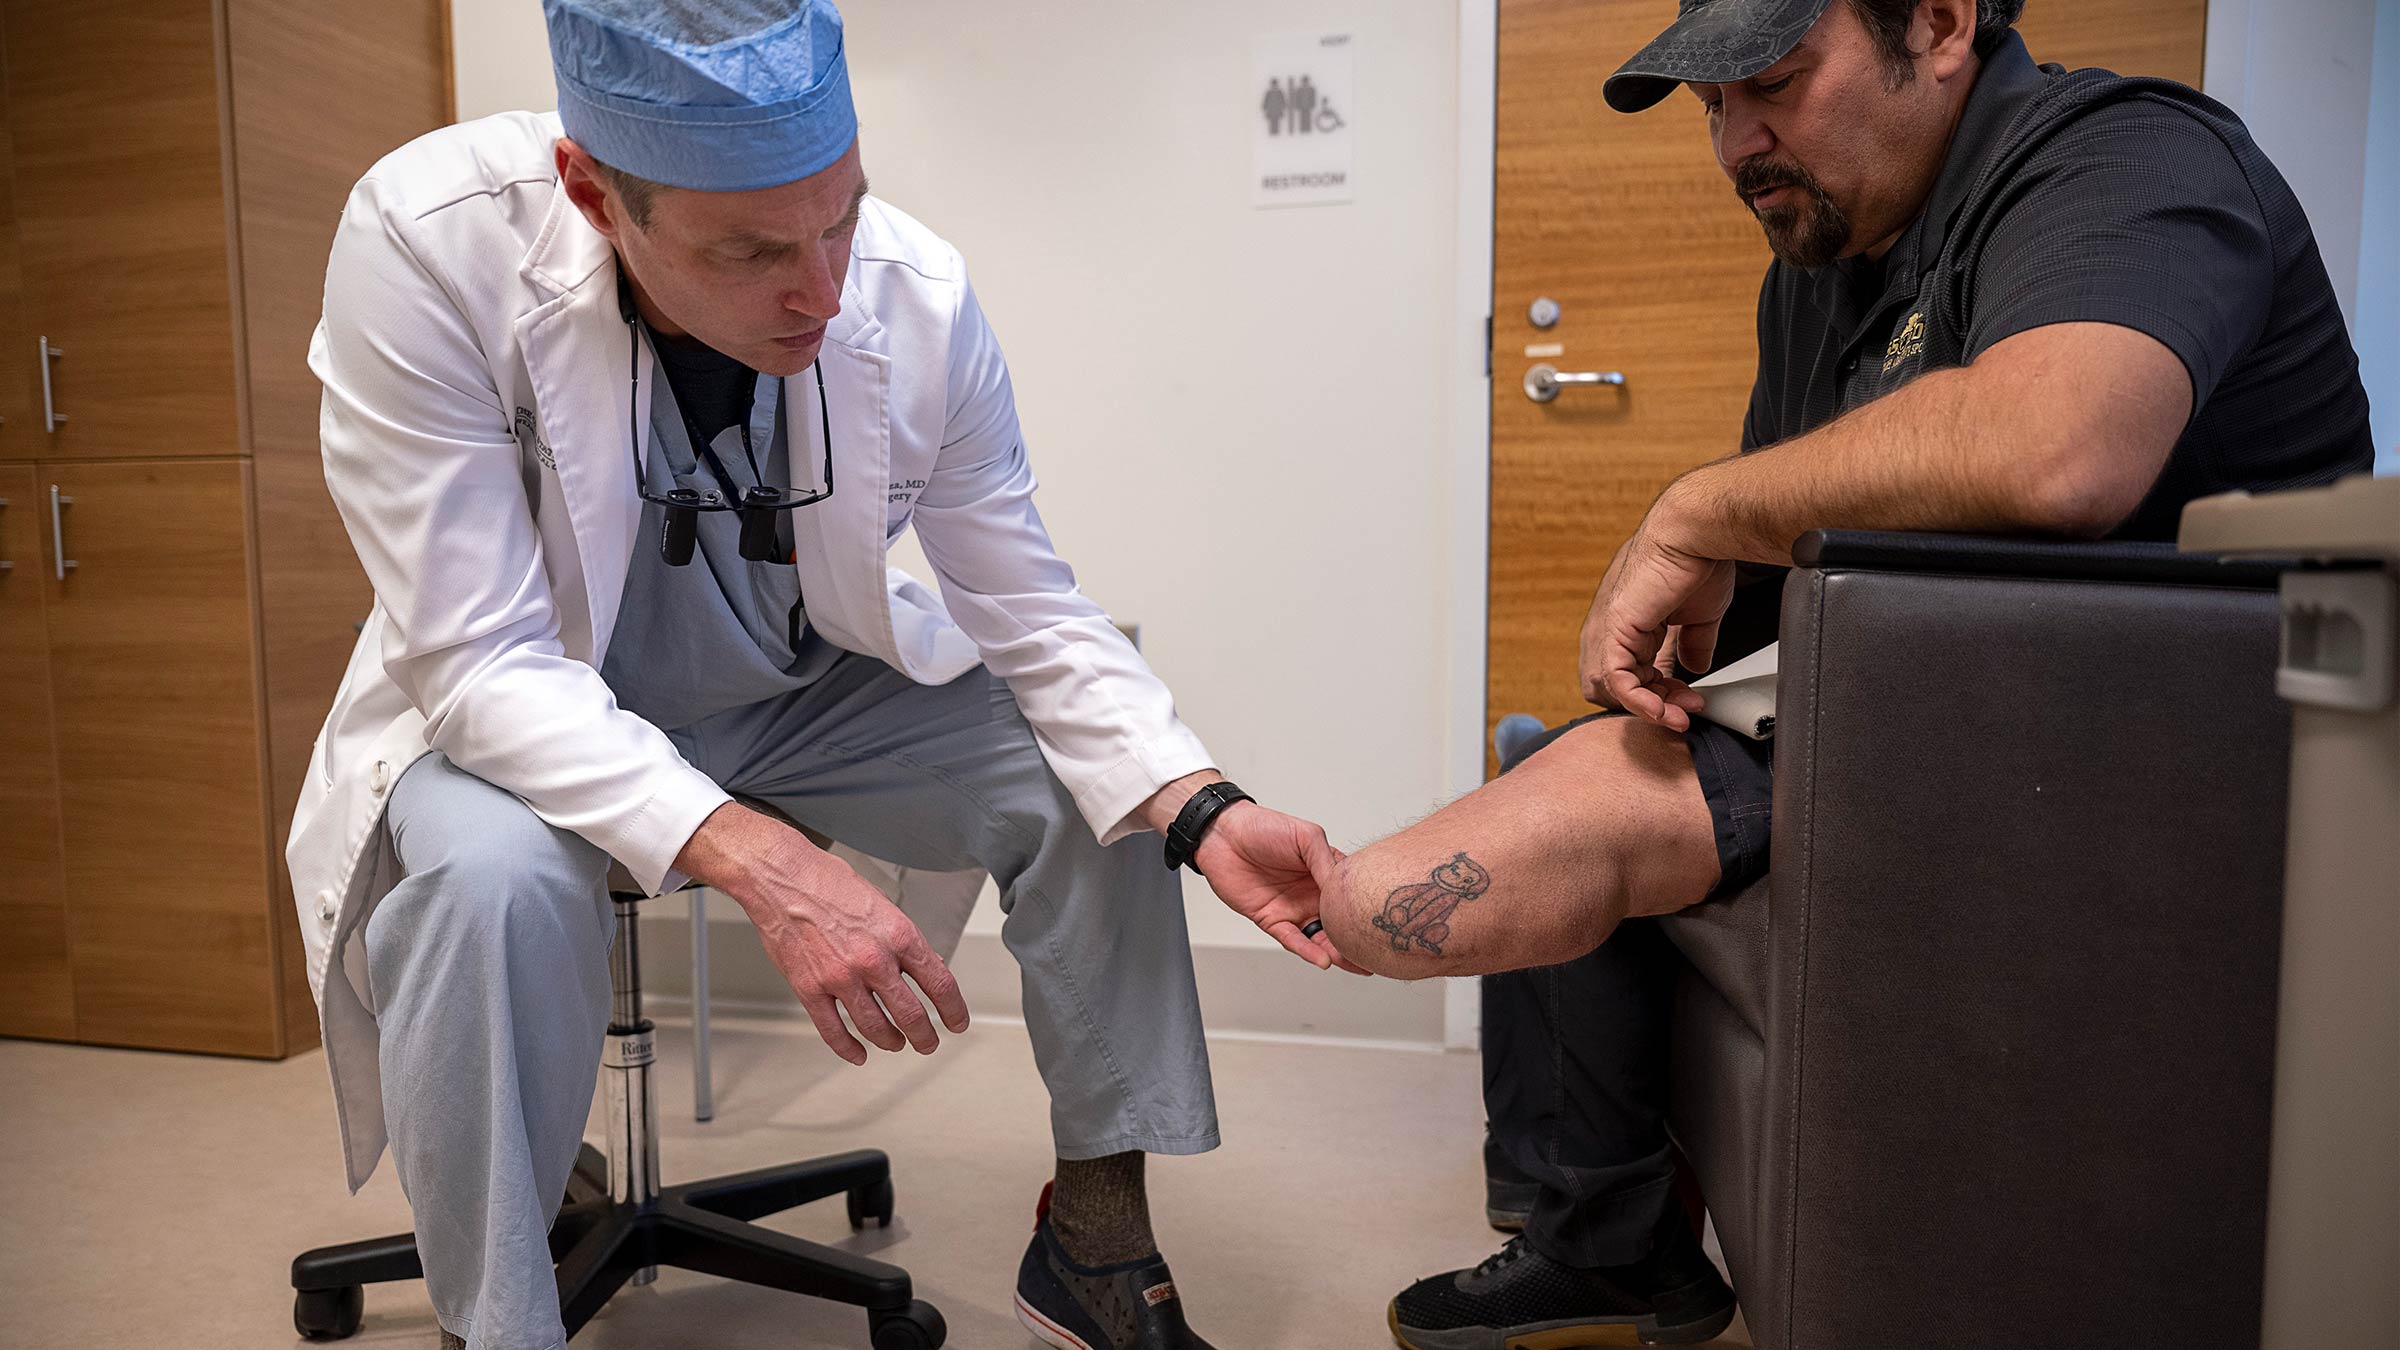 Dr. Souza examining Jernigan's limb